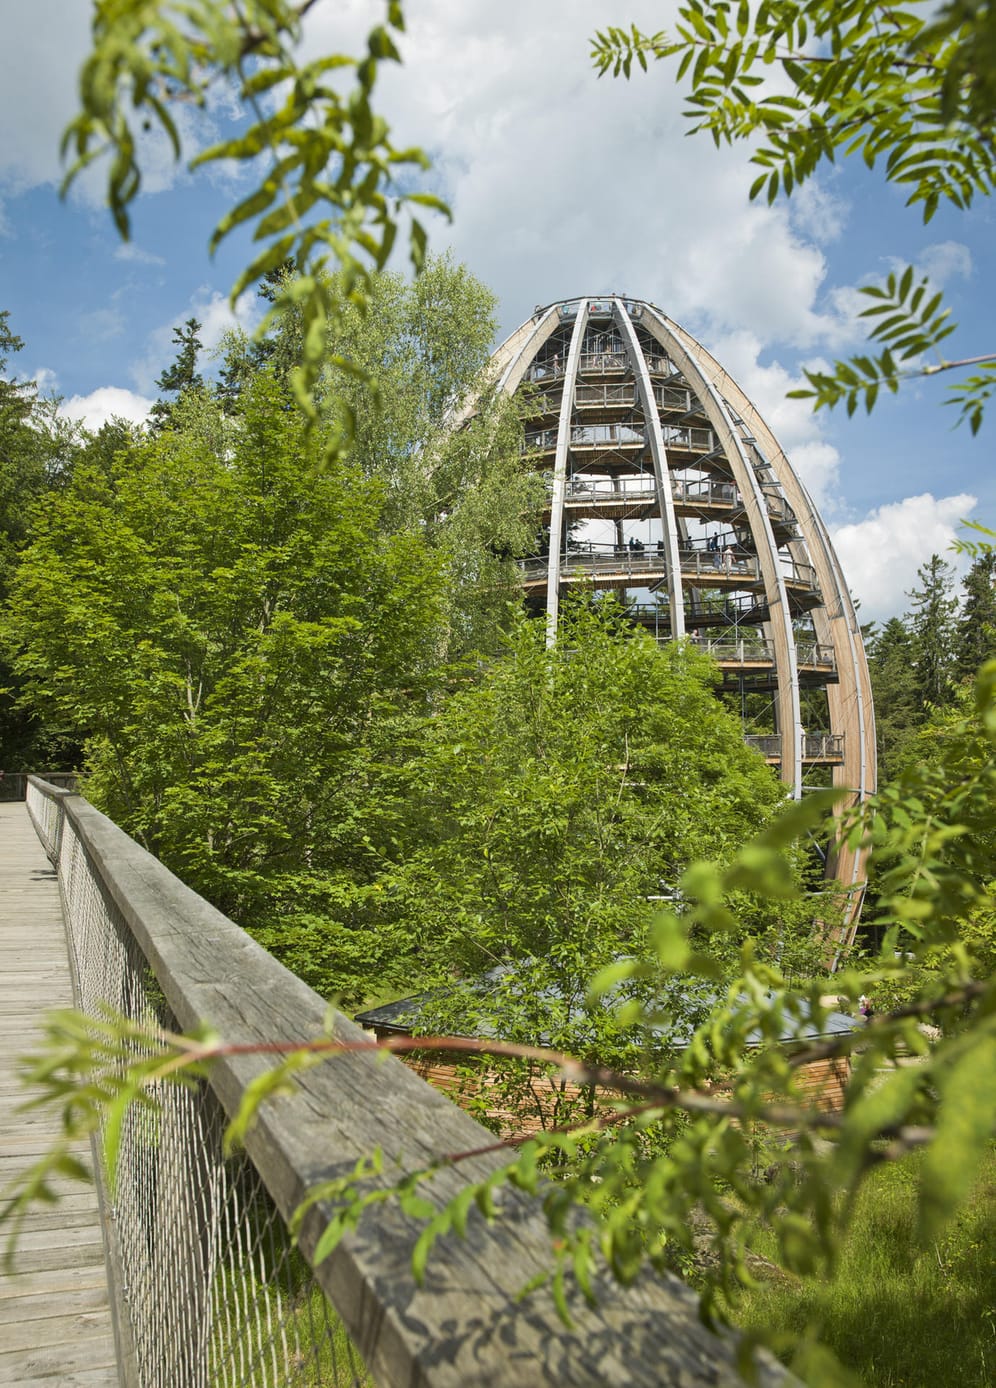 Der Pfad in Neuschönau im Bayerischen Wald endet auf der obersten Plattform eines Baumturms.